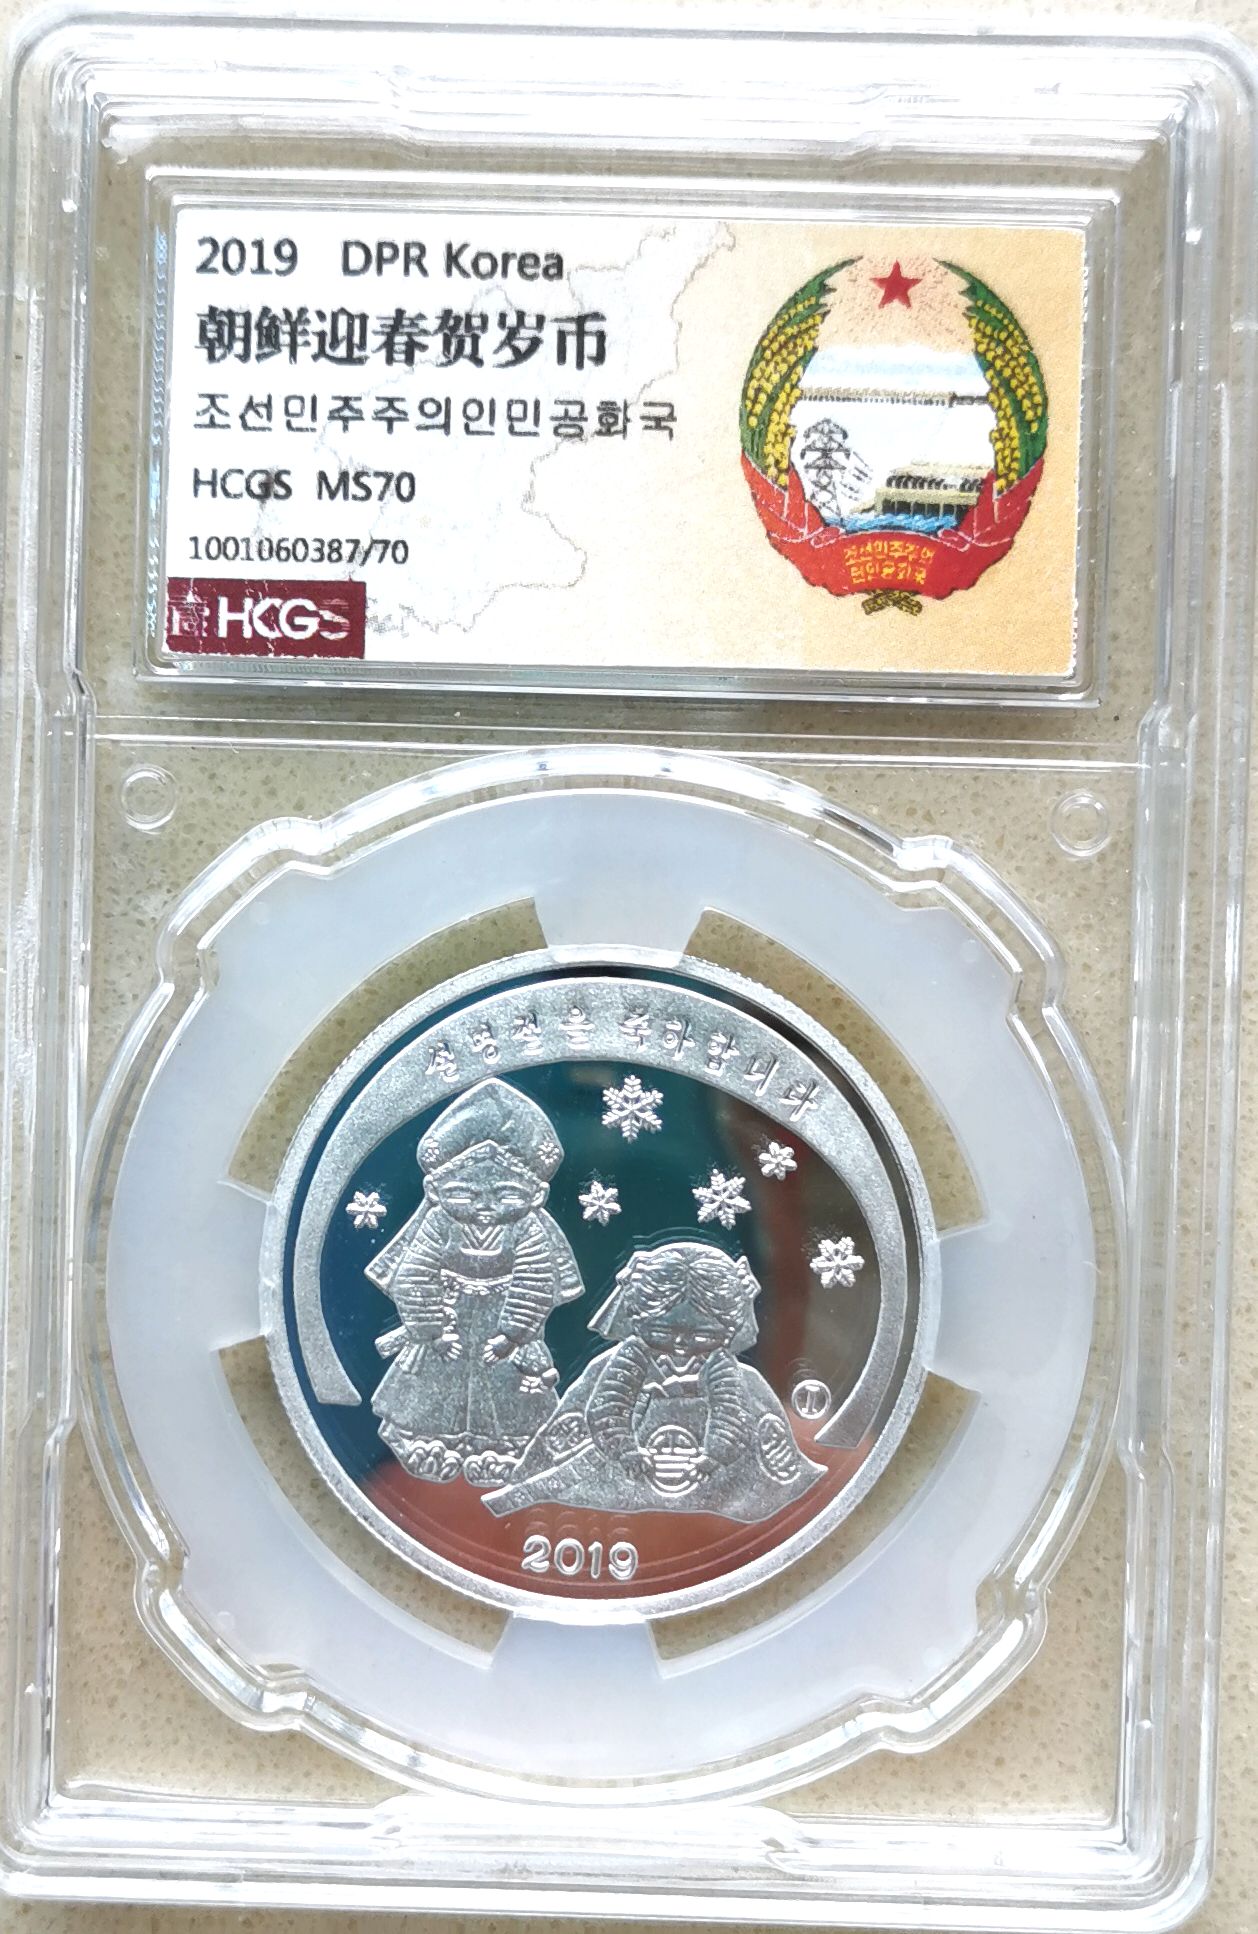 L3625, Korea Silver Coin "2019 Happy New Year", 1/4 Oz